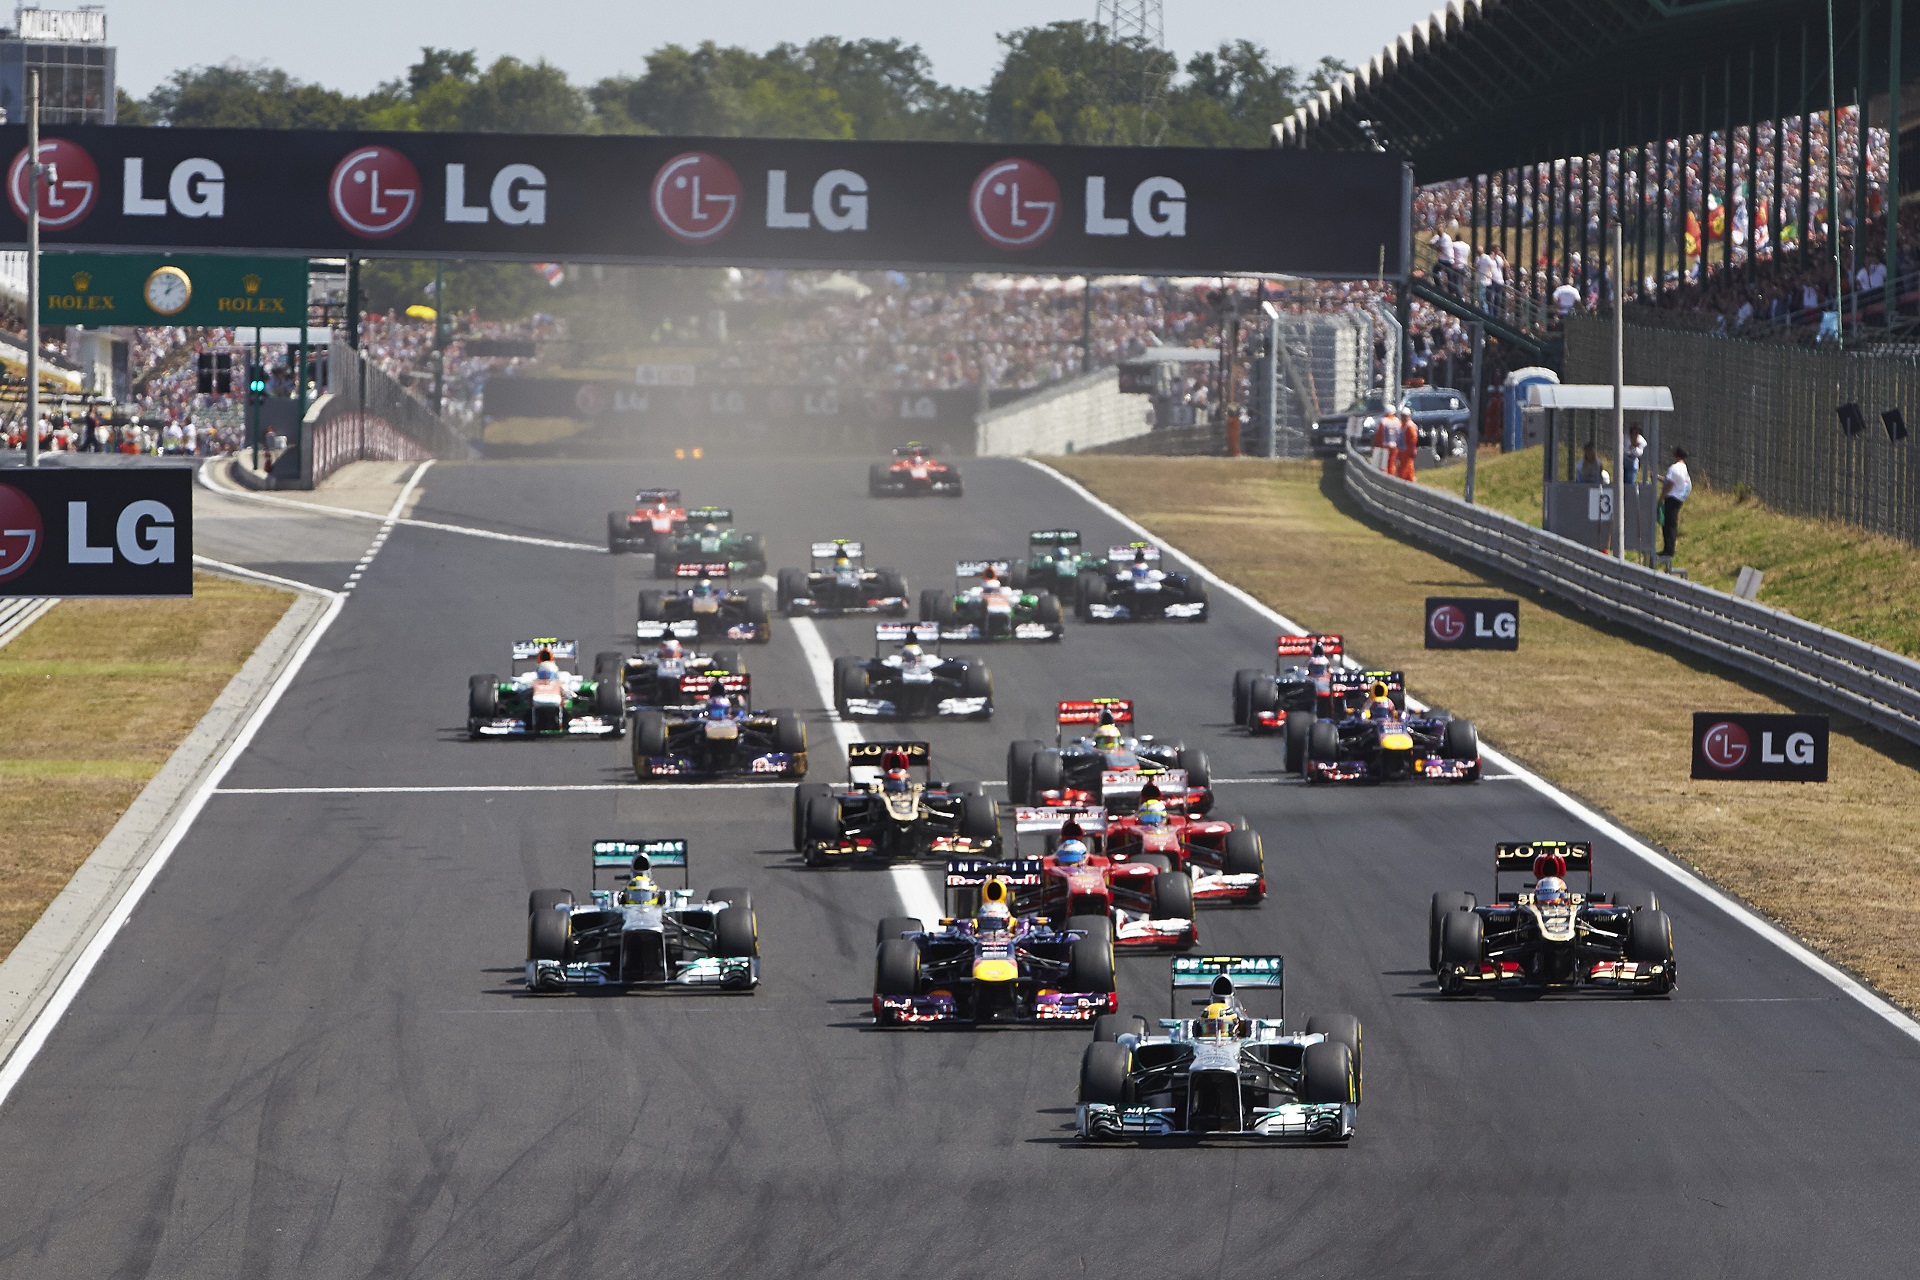 Foto do Circuito de Formula 1, GP Hungria , Budapest - foto by F1 f1tornello